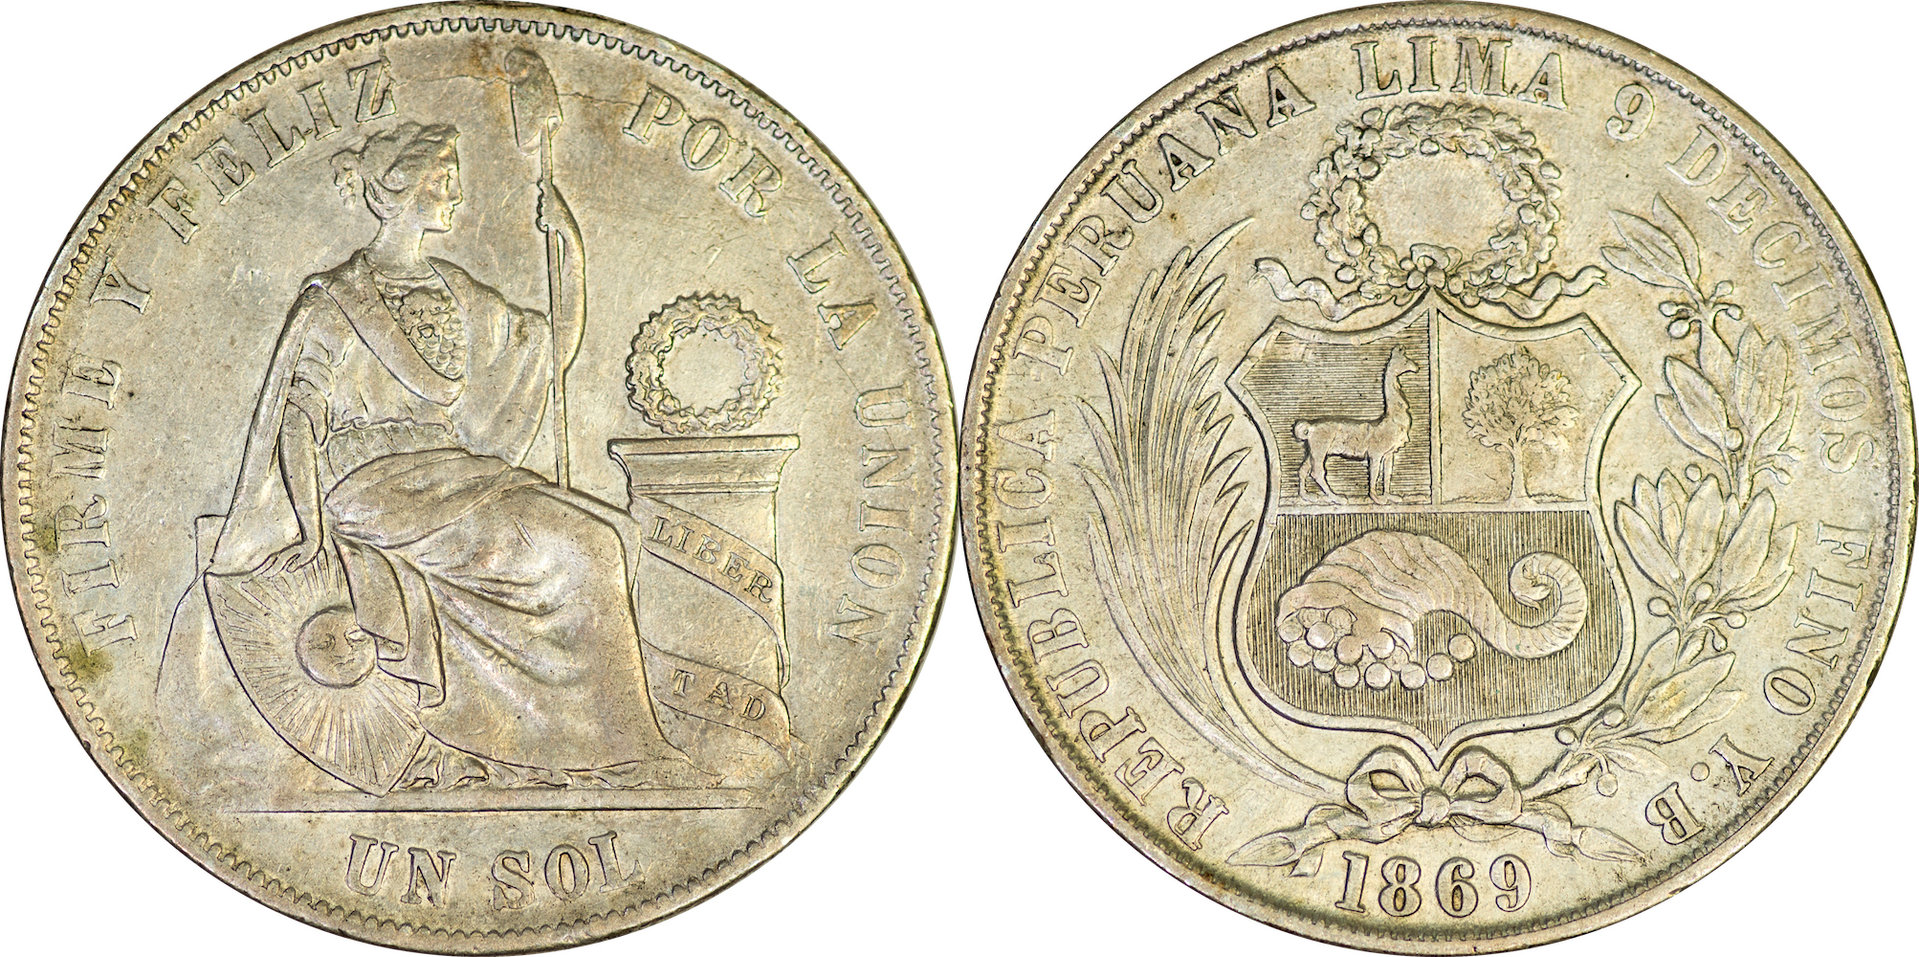 Peru - 1869 1 Sol.jpg